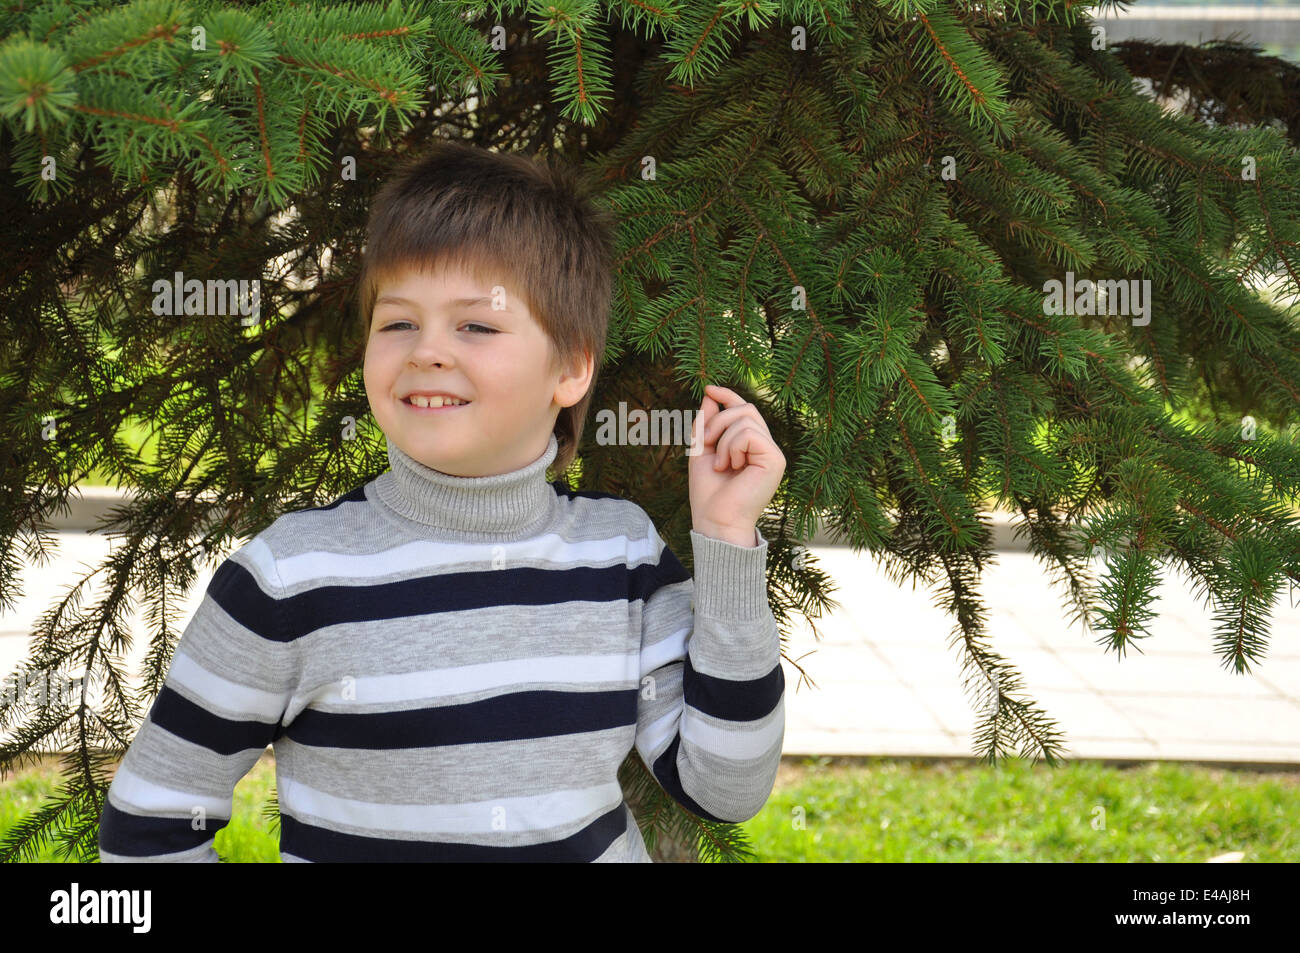 junge Kind Porträt einer achtjährigen Wert Rollkragen Strickjacke Pullover Streifen gestreift Parks Gärten grüne blondes Haar sieht Blick da Stockfoto